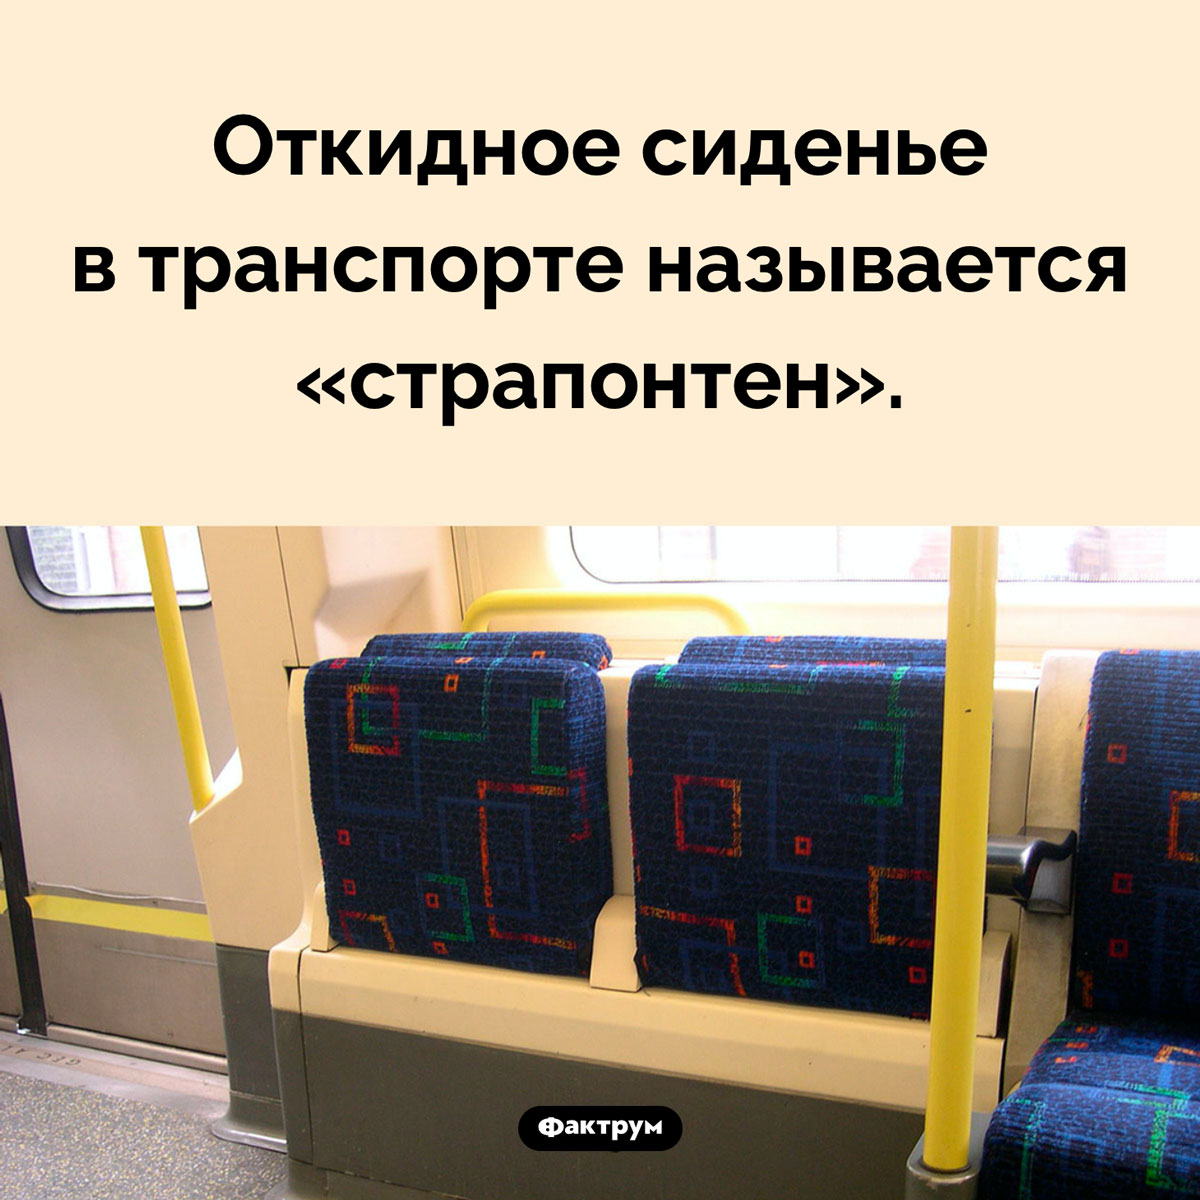 Как называется откидное сиденье. Откидное сиденье в транспорте называется «страпонтен».